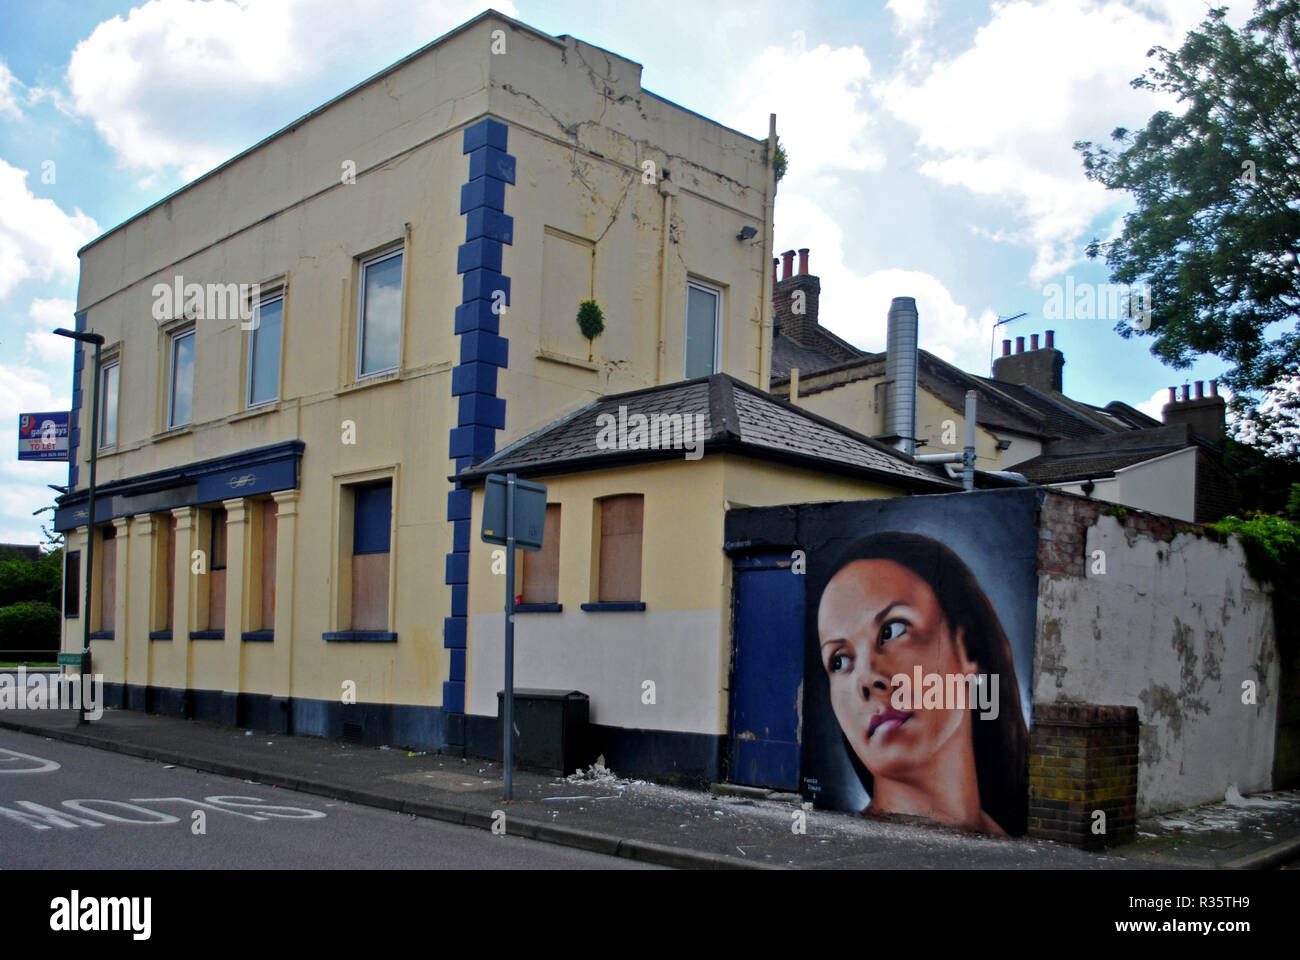 Un arte di strada ritratto di una giovane donna adorna la parete posteriore della chiusura di un locale pubblico in Penge sud di Londra, Regno Unito. Foto Stock